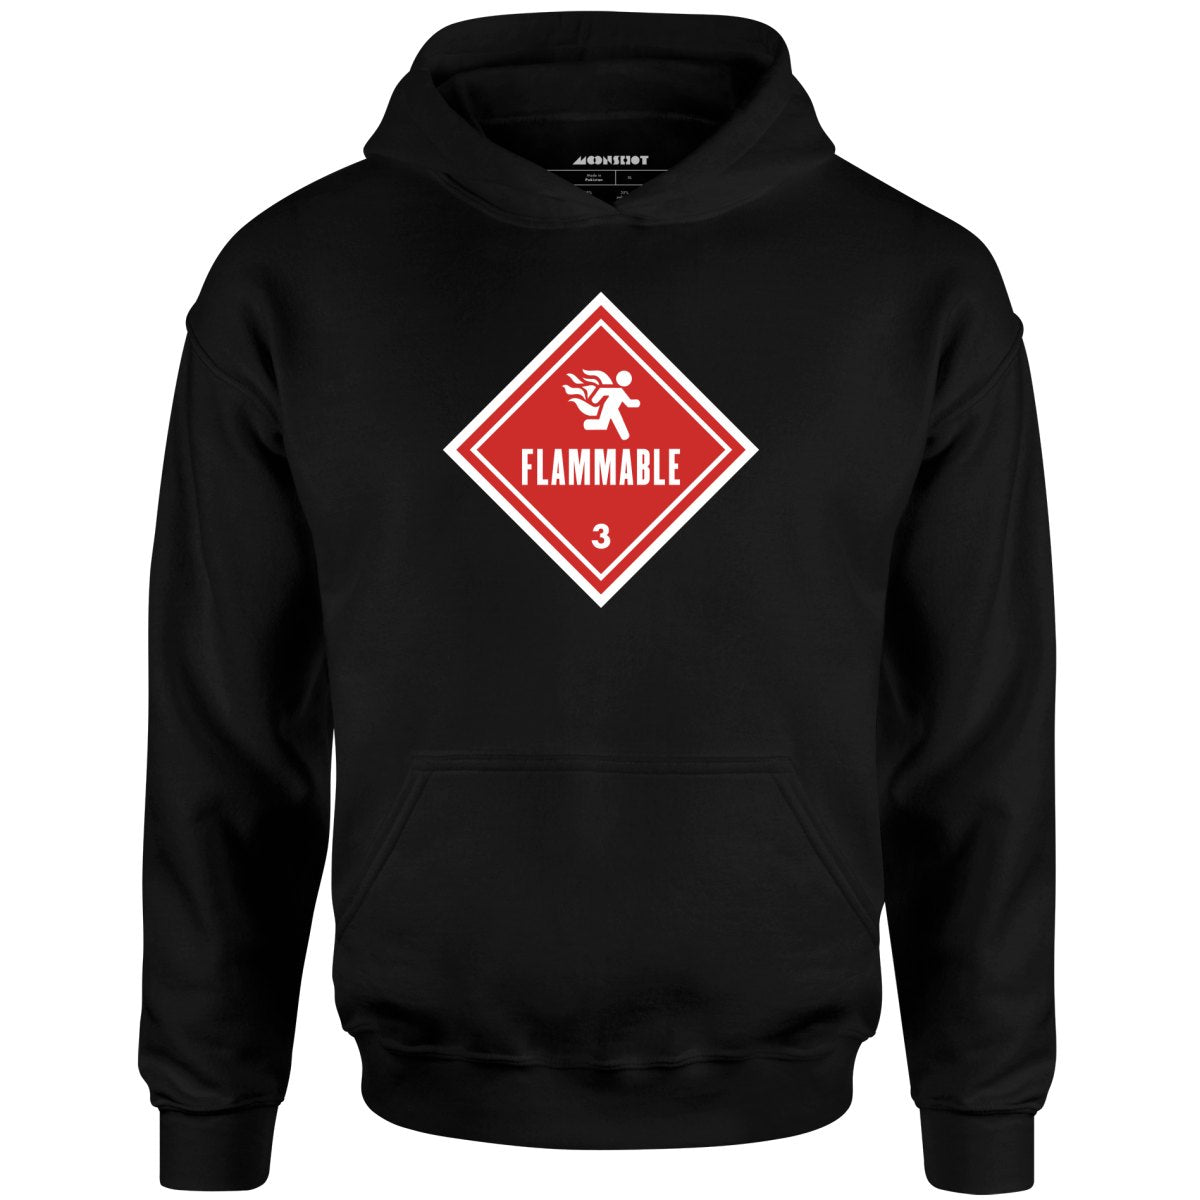 Flammable Human Warning - Unisex Hoodie